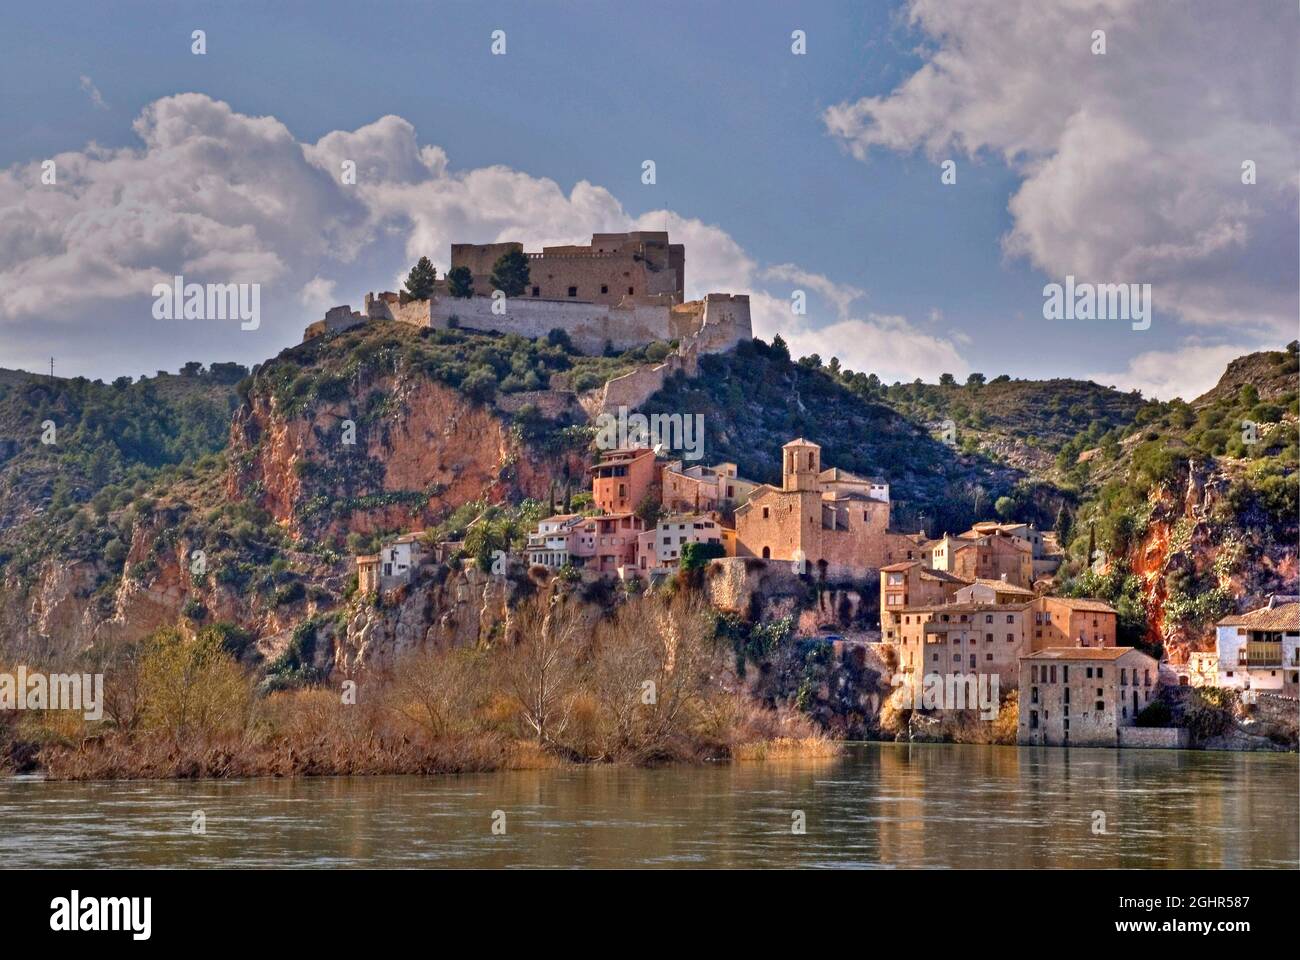 La région de Tarragone en Espagne : le village et le château de Miravet surplombant la rivière Ebre. Banque D'Images